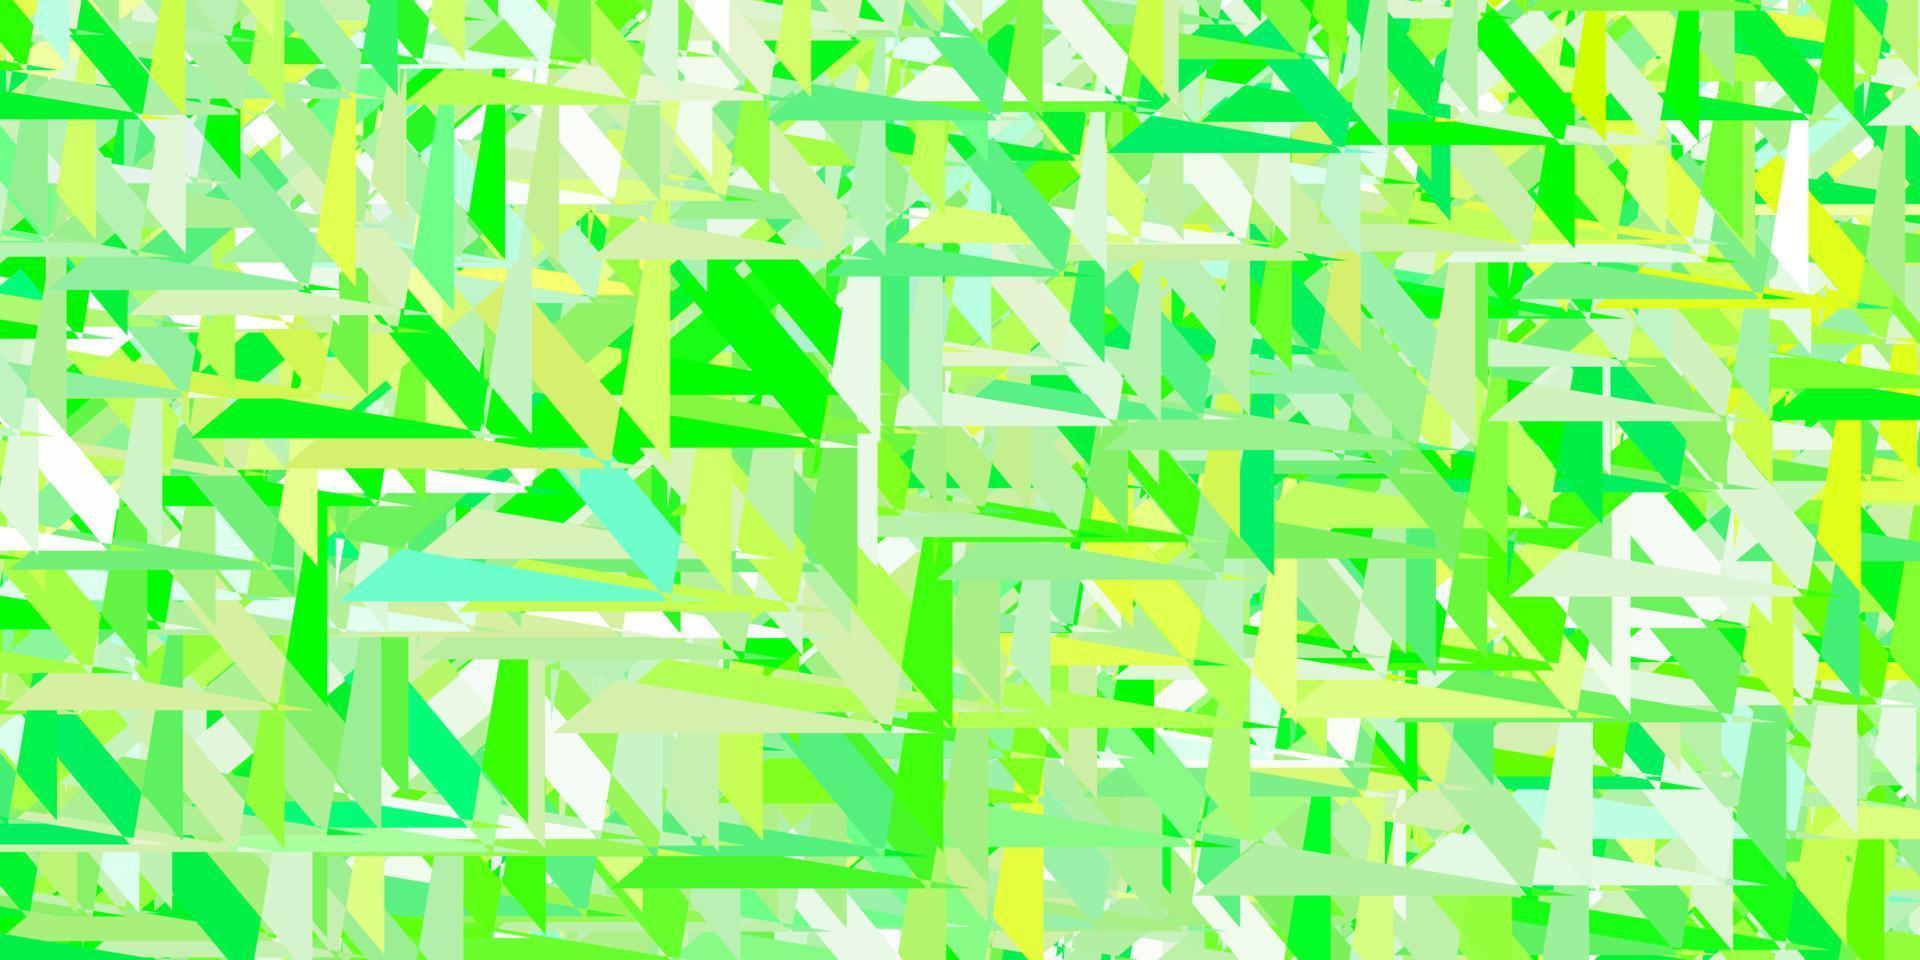 pano de fundo de vetor verde e amarelo claro com triângulos, linhas.